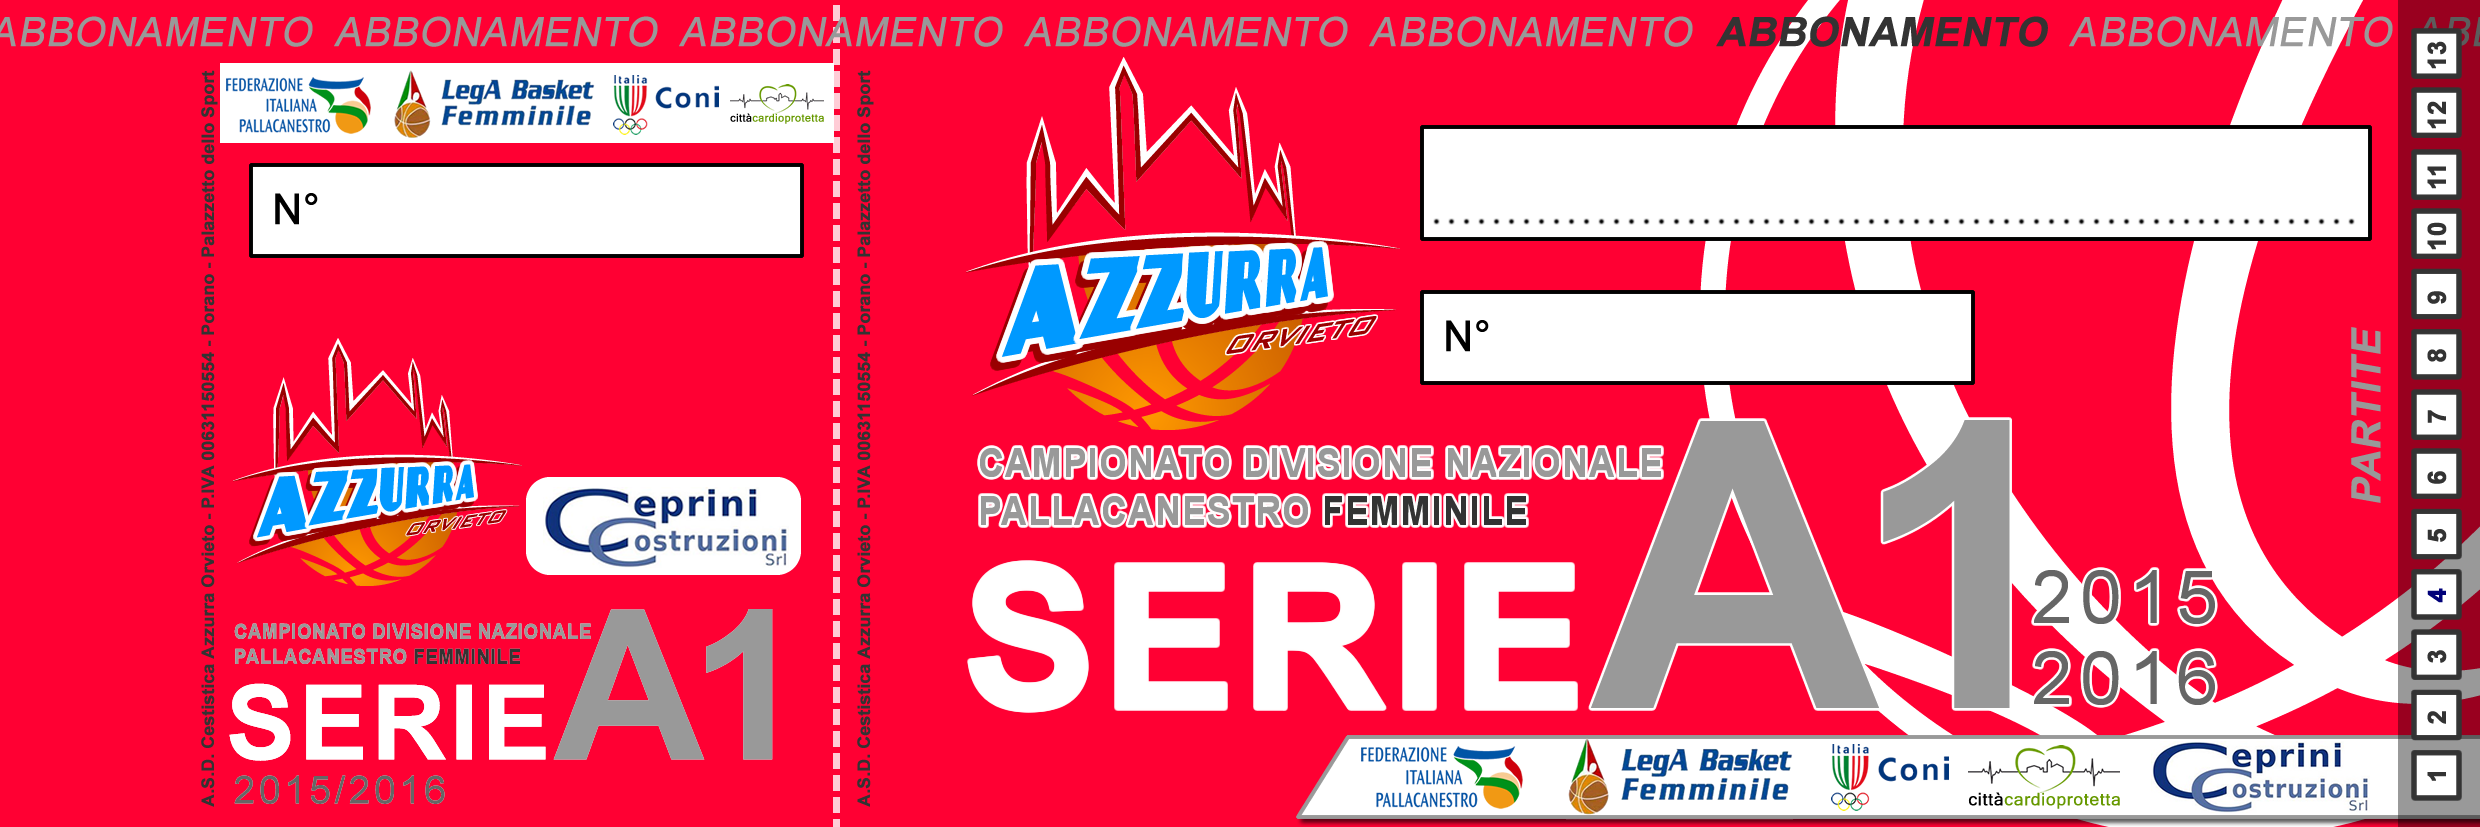 AbbonamentoAzzurra2014-3